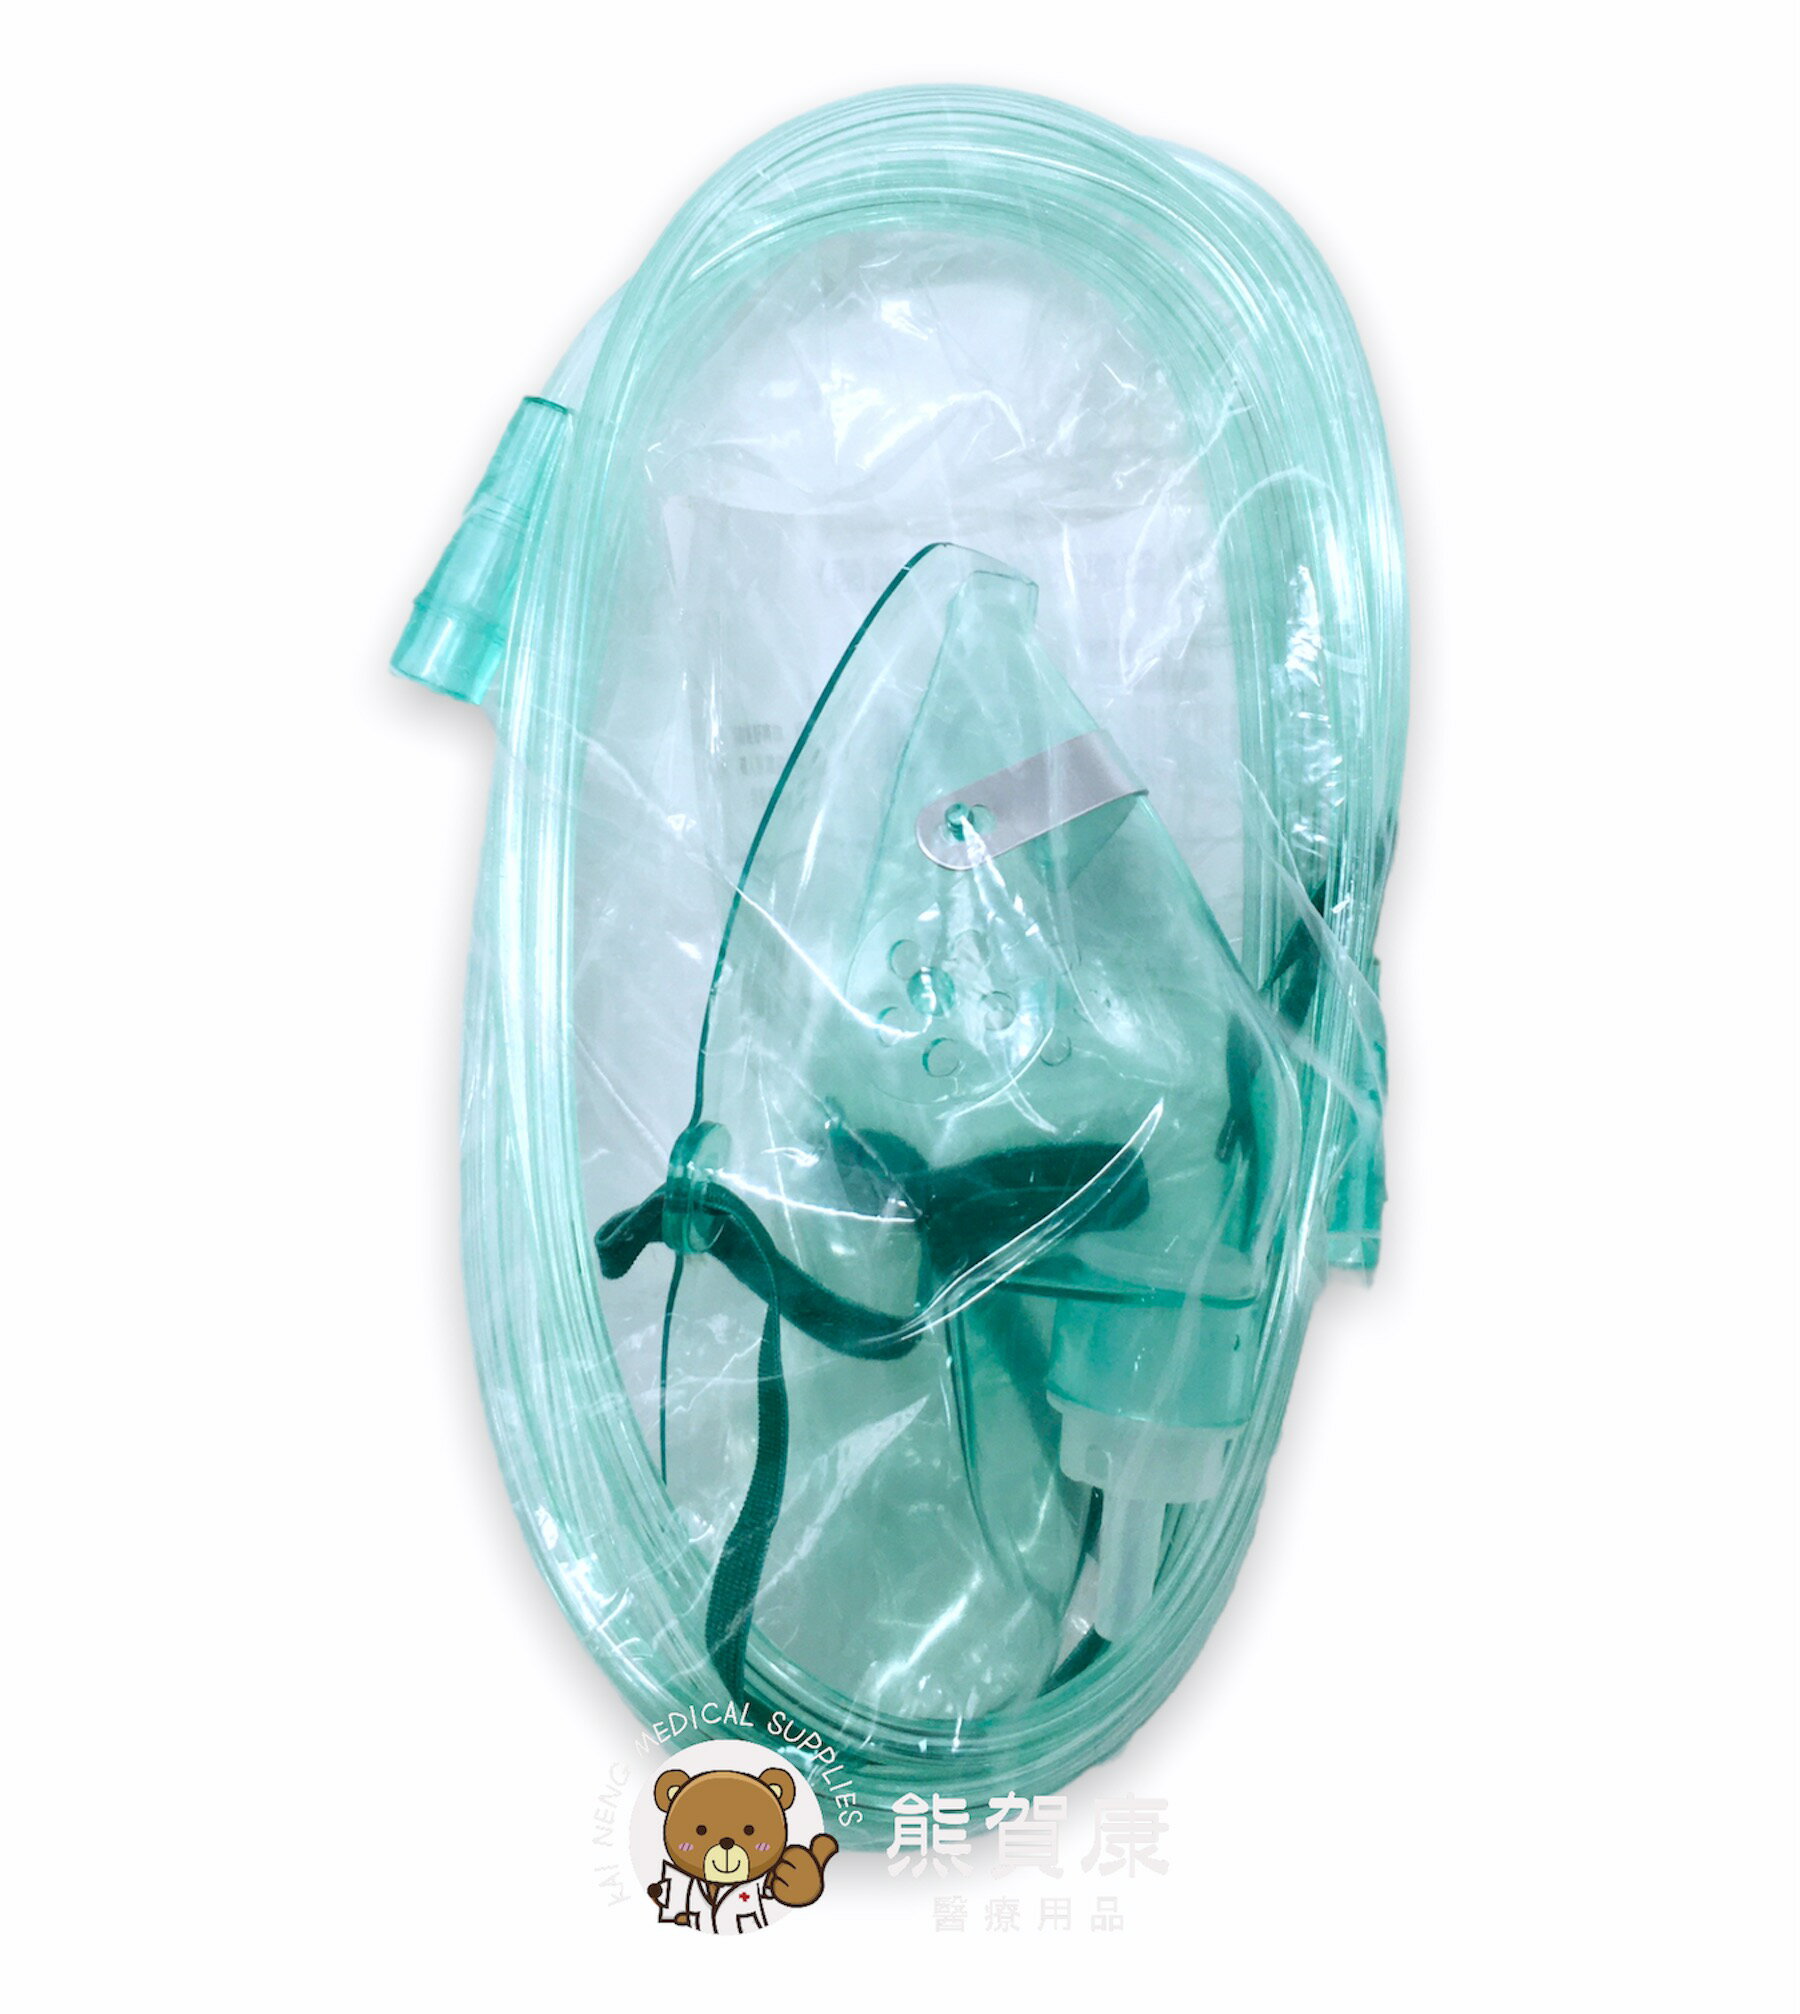 【貝斯美德 】氧氣鼻管 氧氣面罩 氧氣導管 成人用 含管線2米 PN-1106